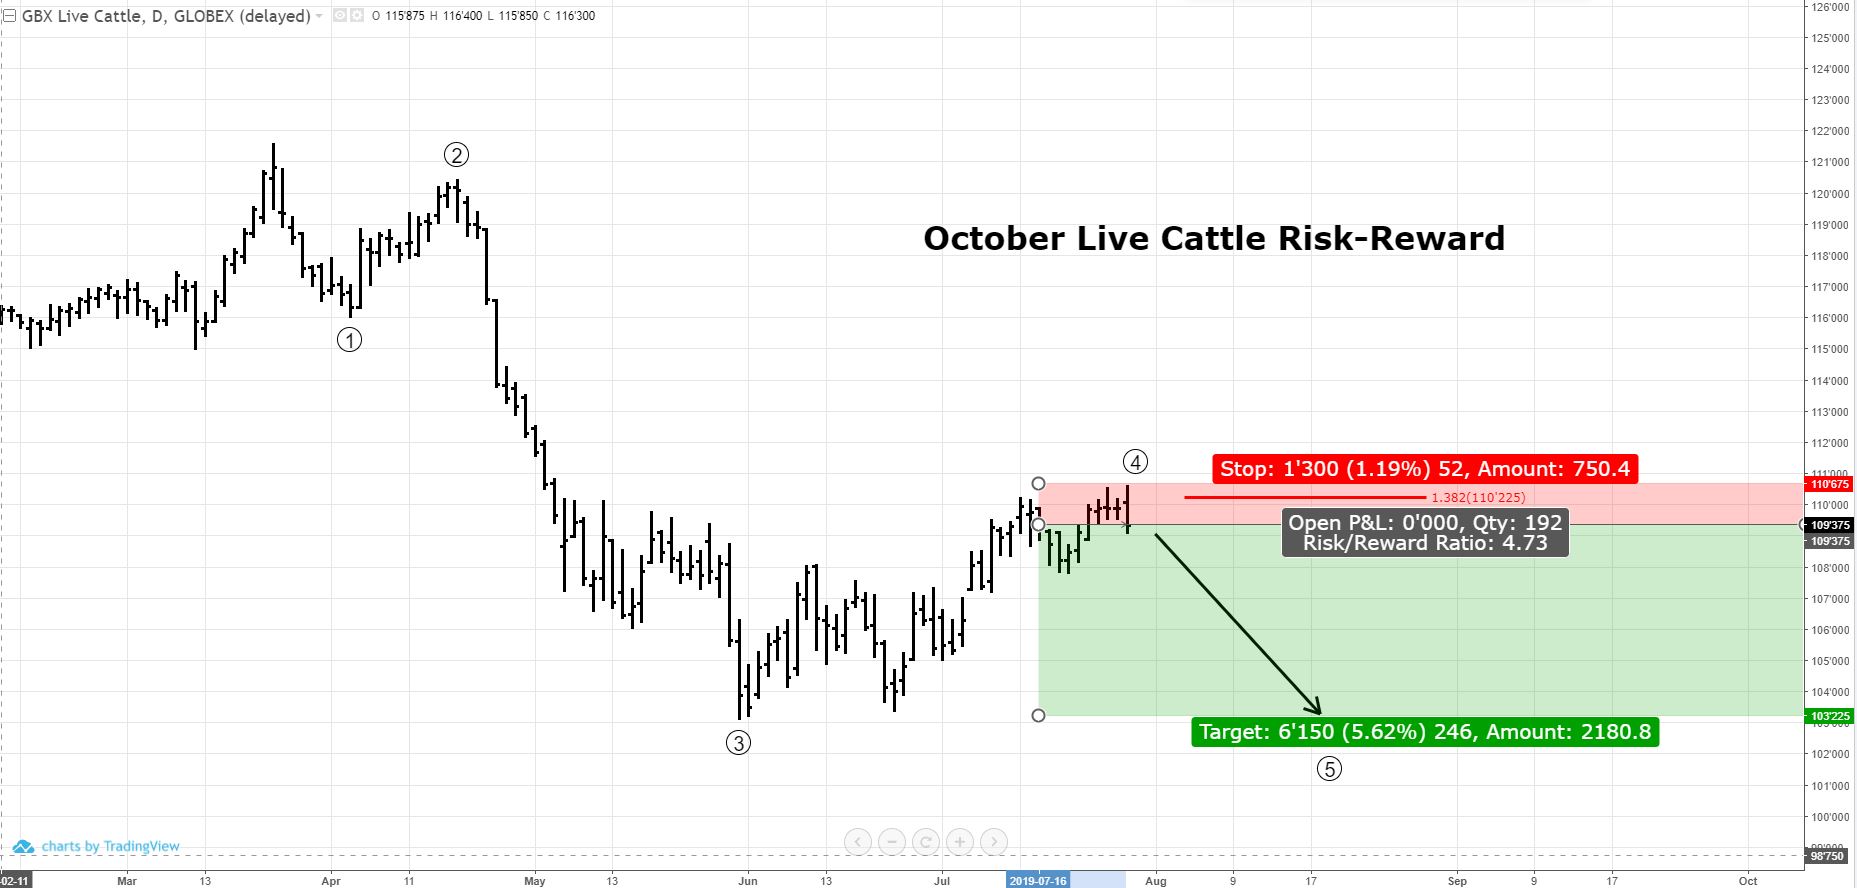 October Live Cattle Risk-Reward